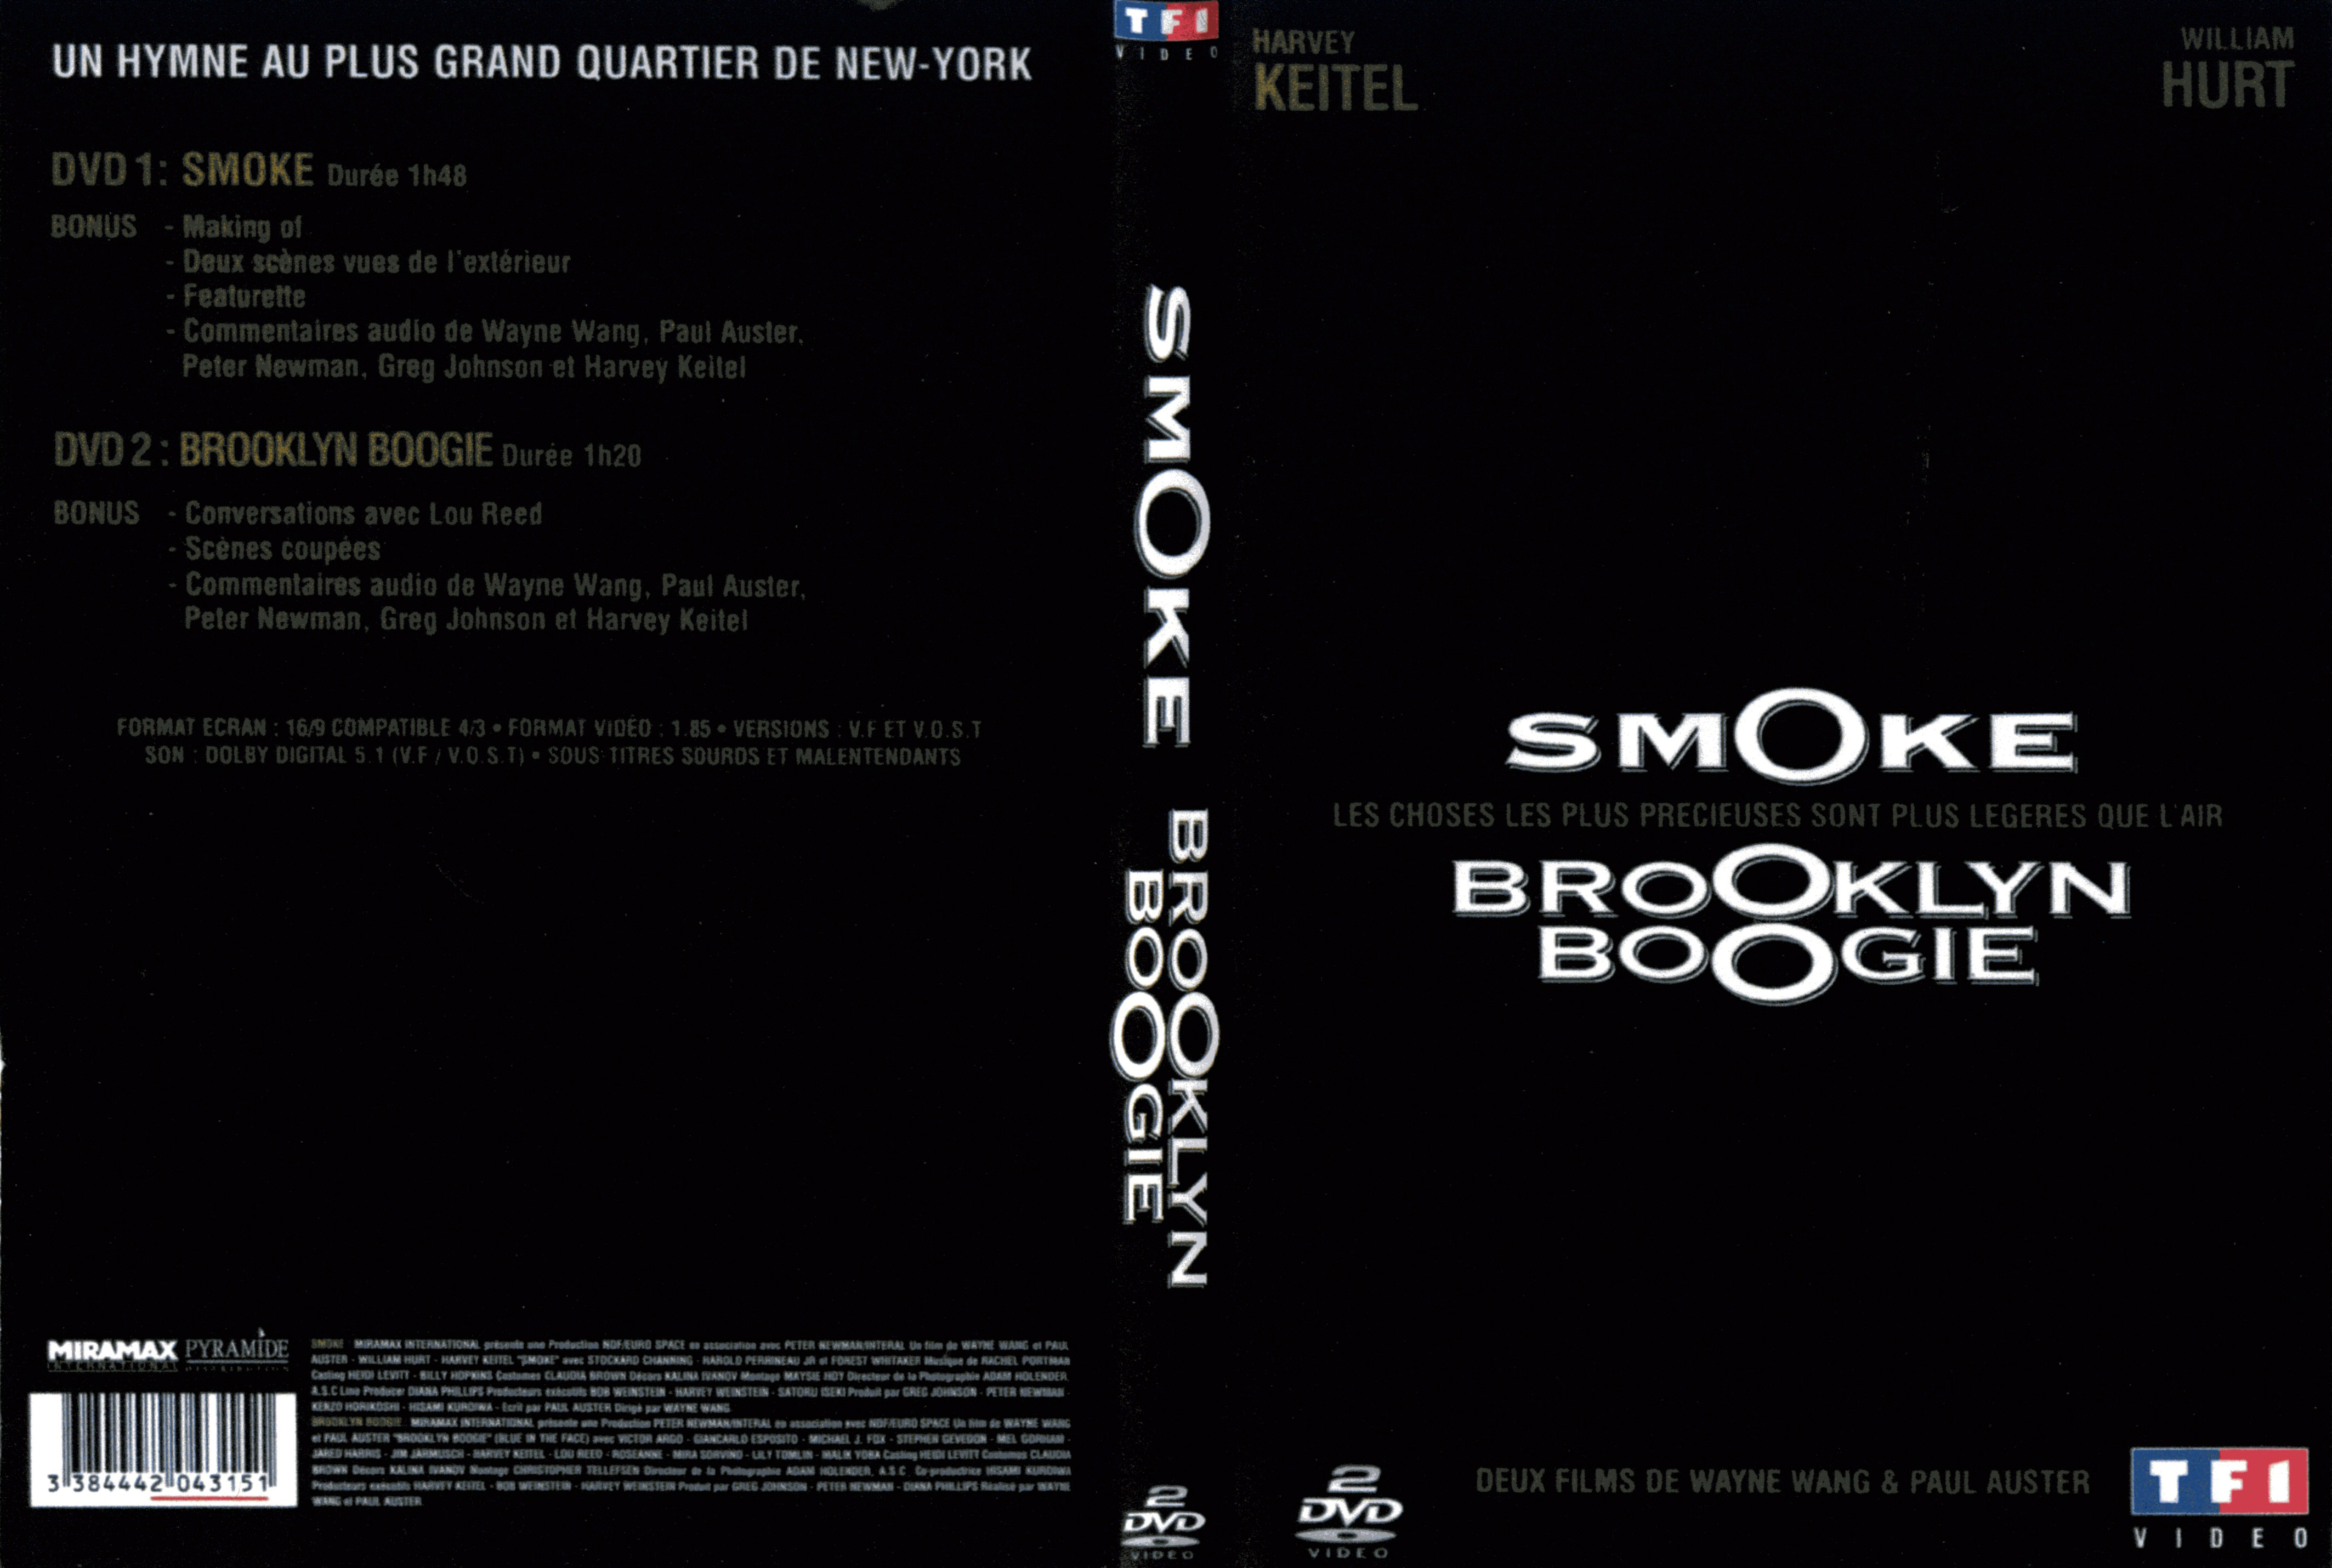 Jaquette DVD Smoke ET Brooklyn boogie